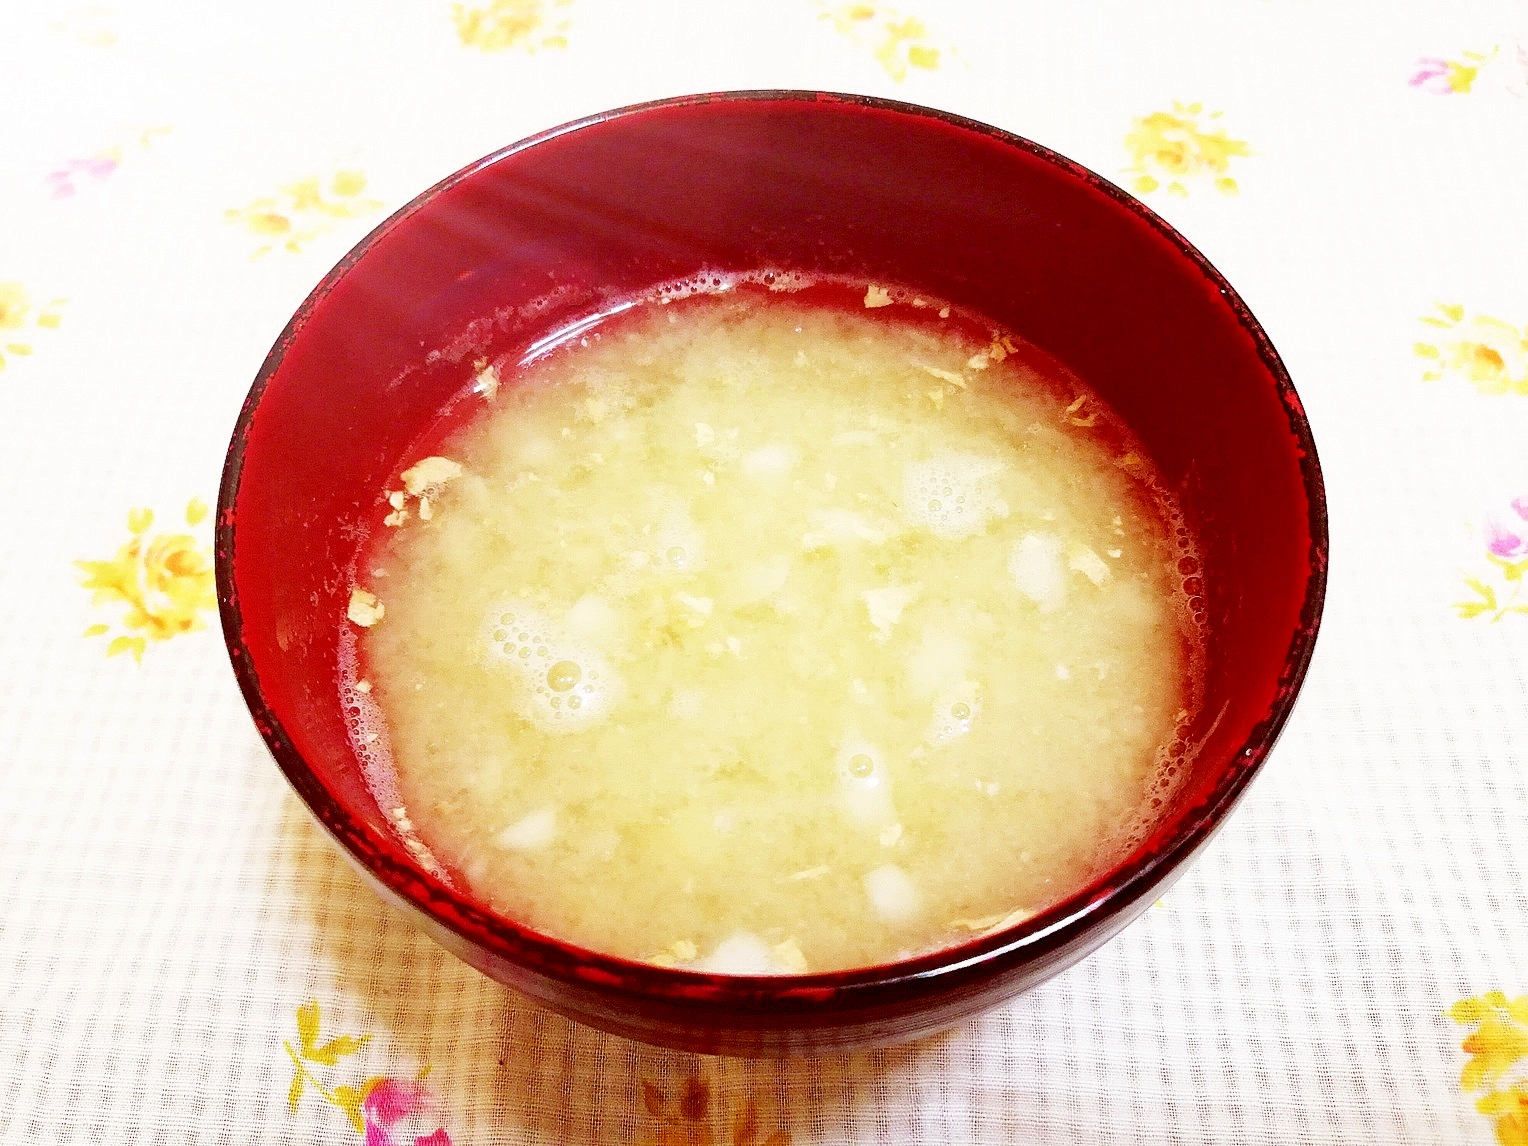 すりおろし大根と生姜のお味噌汁